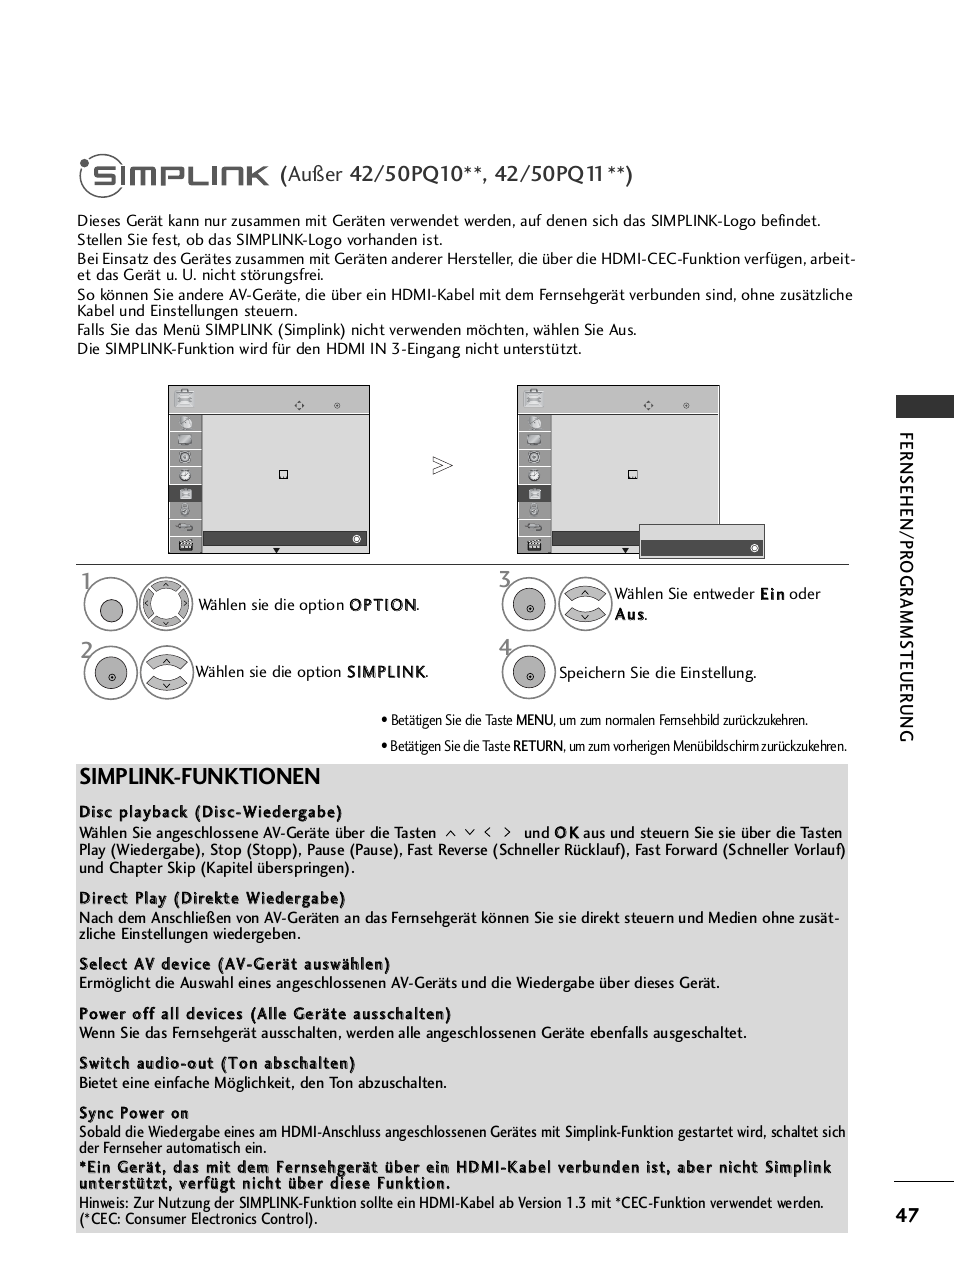 Simplink, Simplink-funktionen, Fernsehen/pr ogr amms teuer ung | LG 42PQ6010 Benutzerhandbuch | Seite 49 / 124